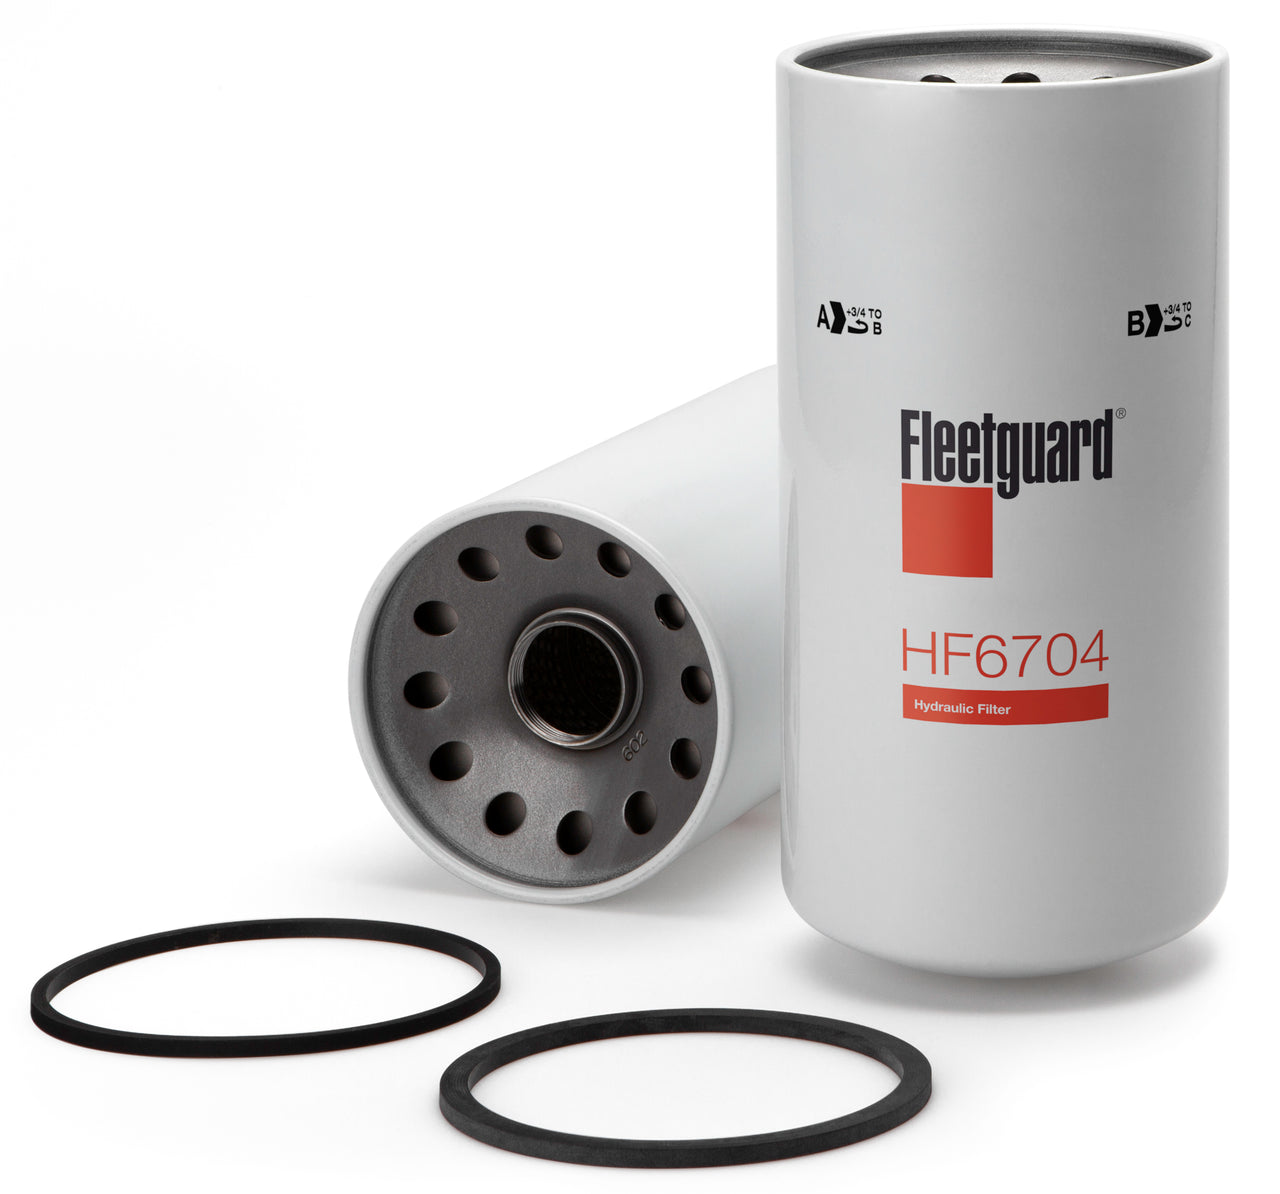 Fleetguard HF6704 Hydraulic Filter